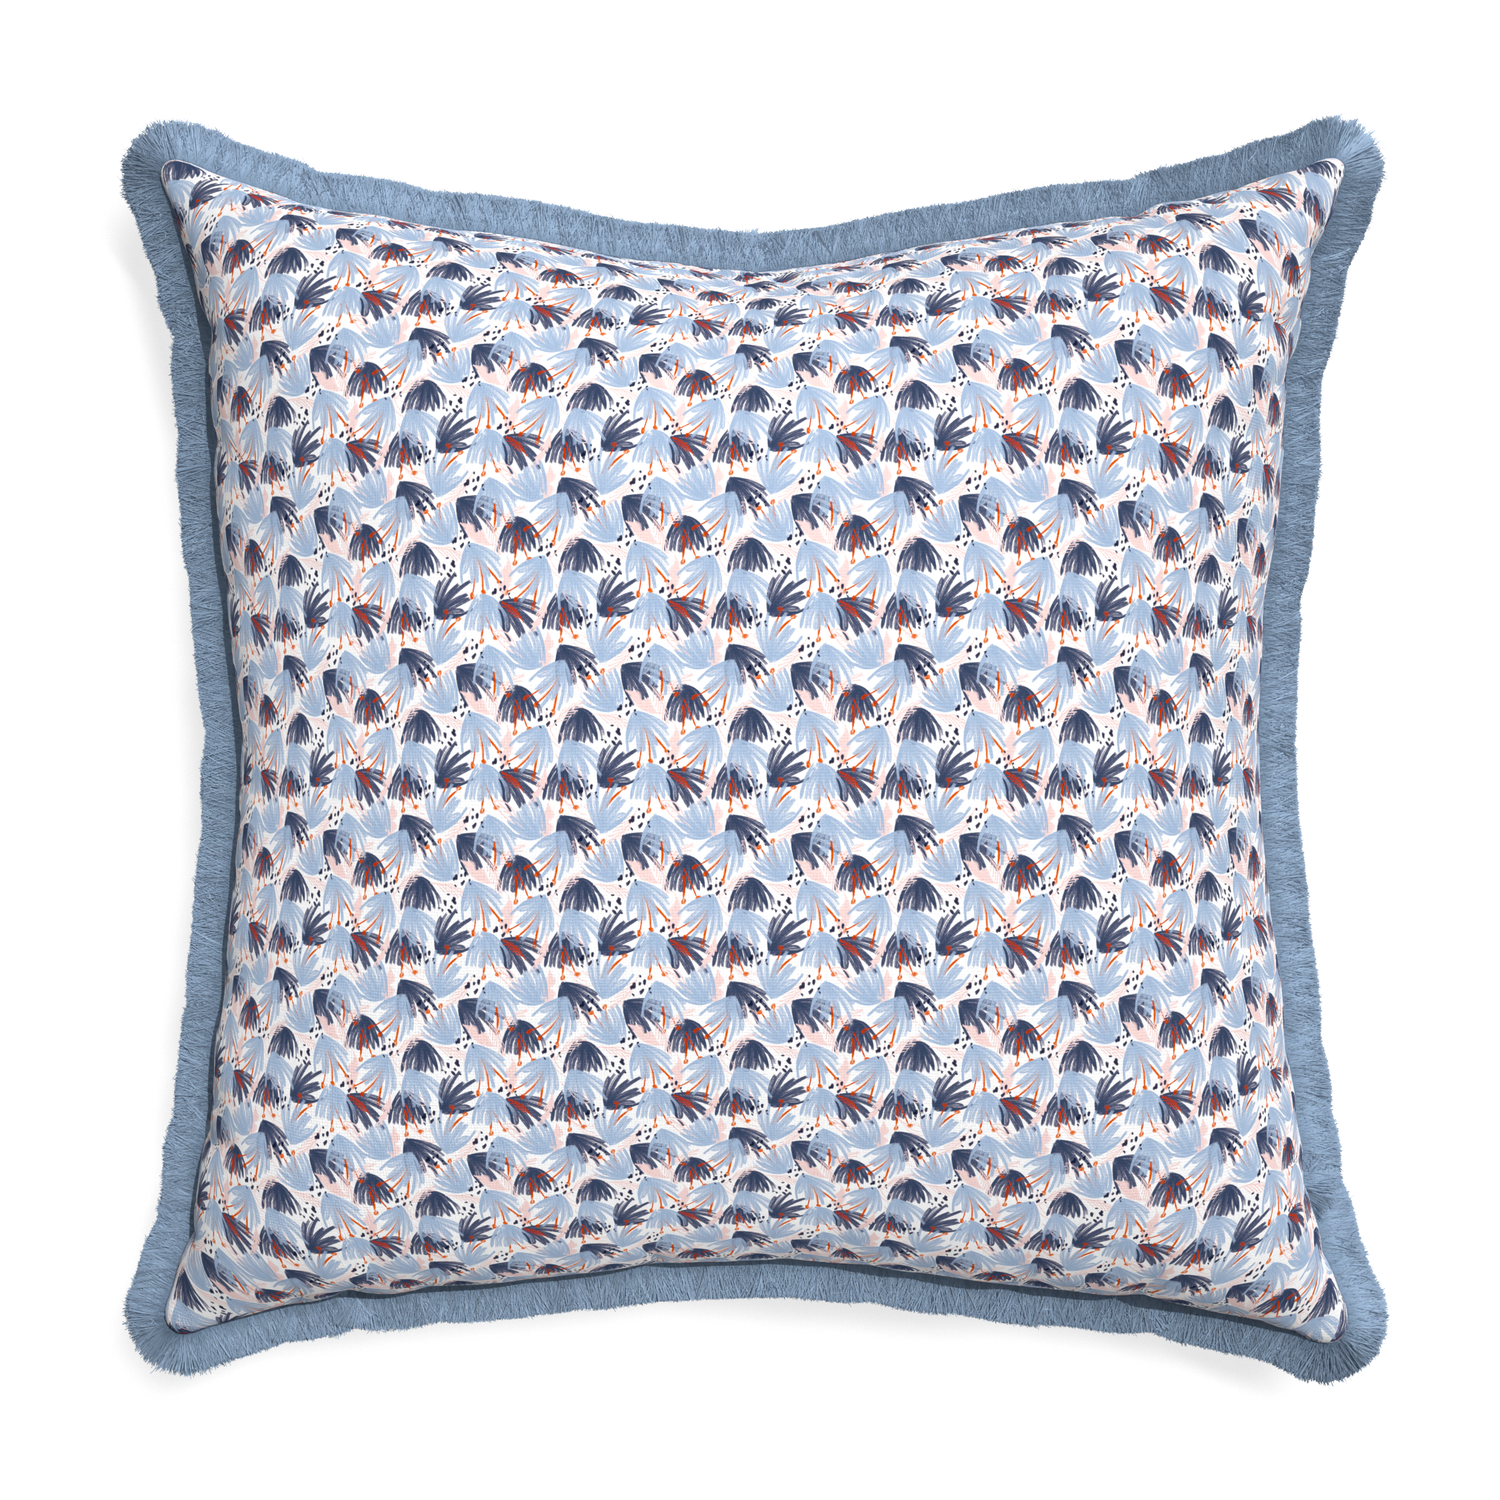 Euro-sham eden blue custom pillow with sky fringe on white background